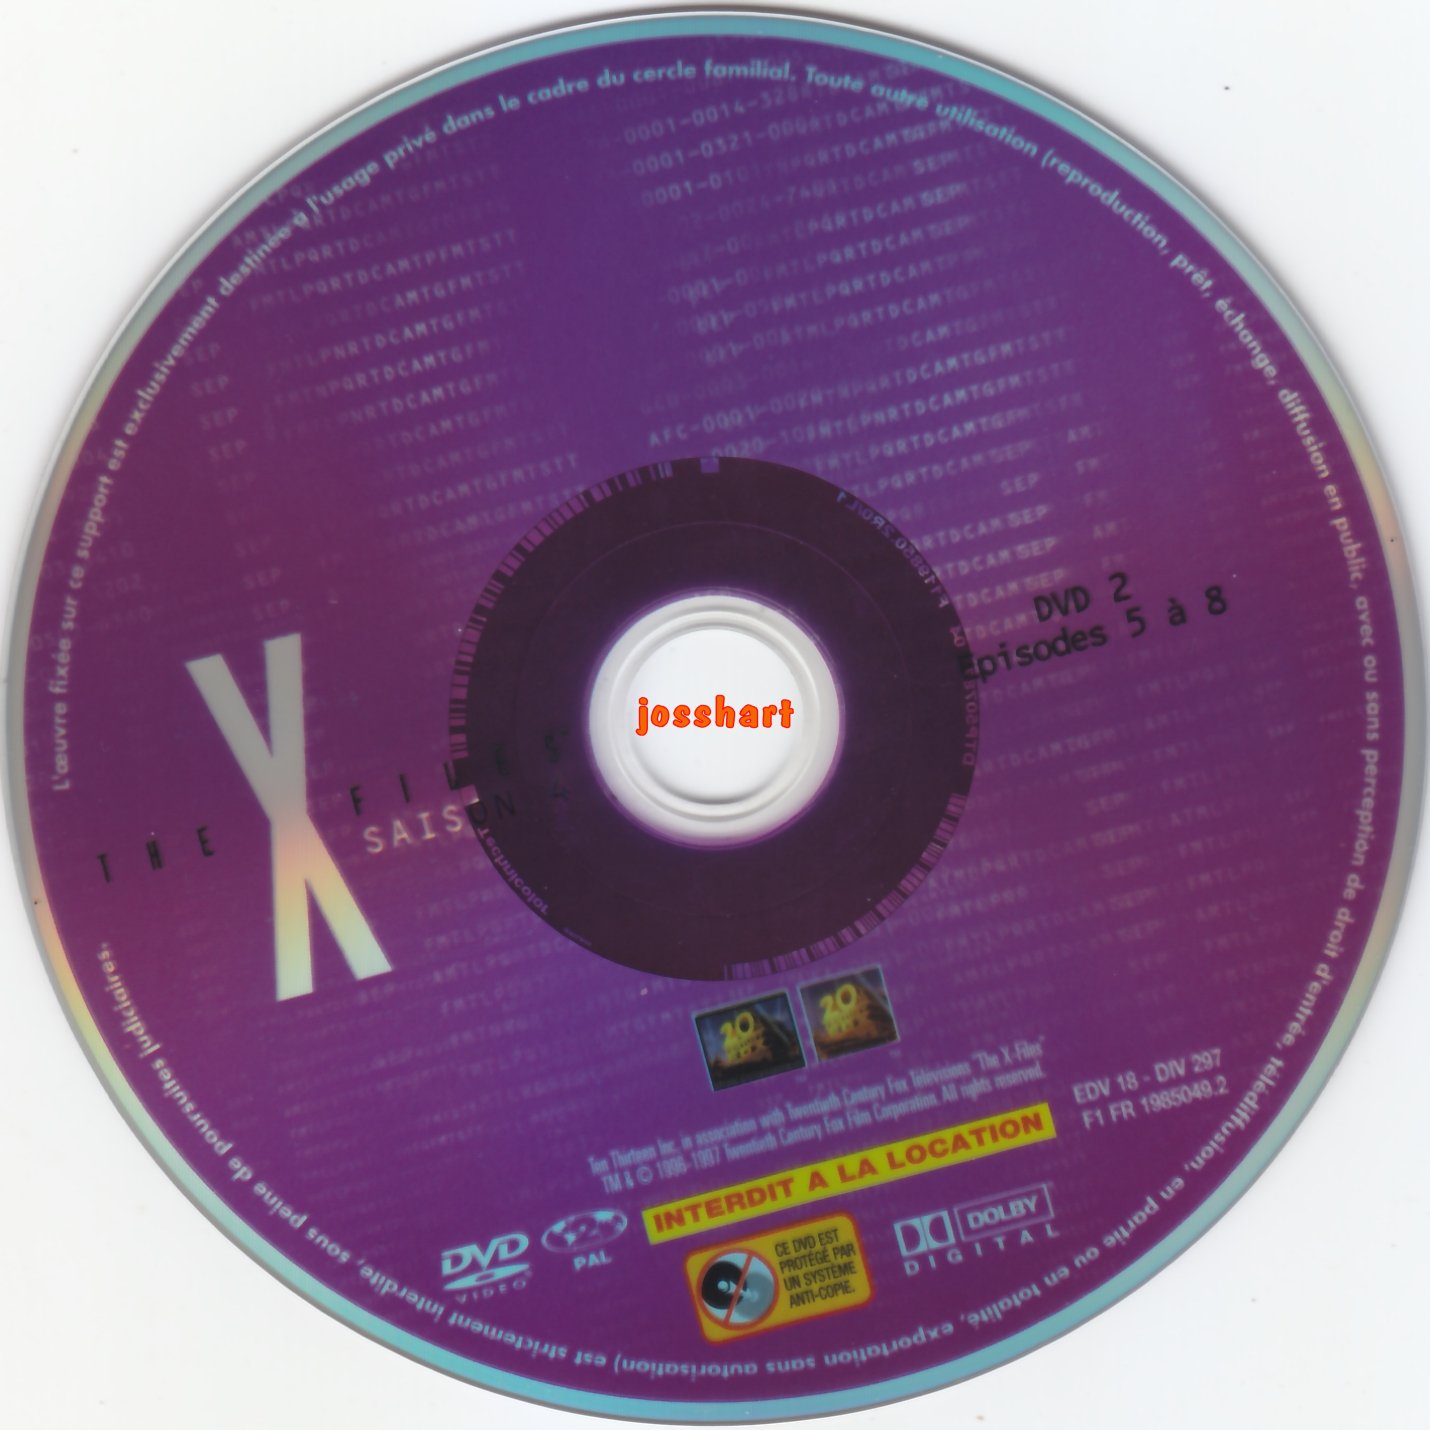 The X Files Saison 4 DVD 2 v2